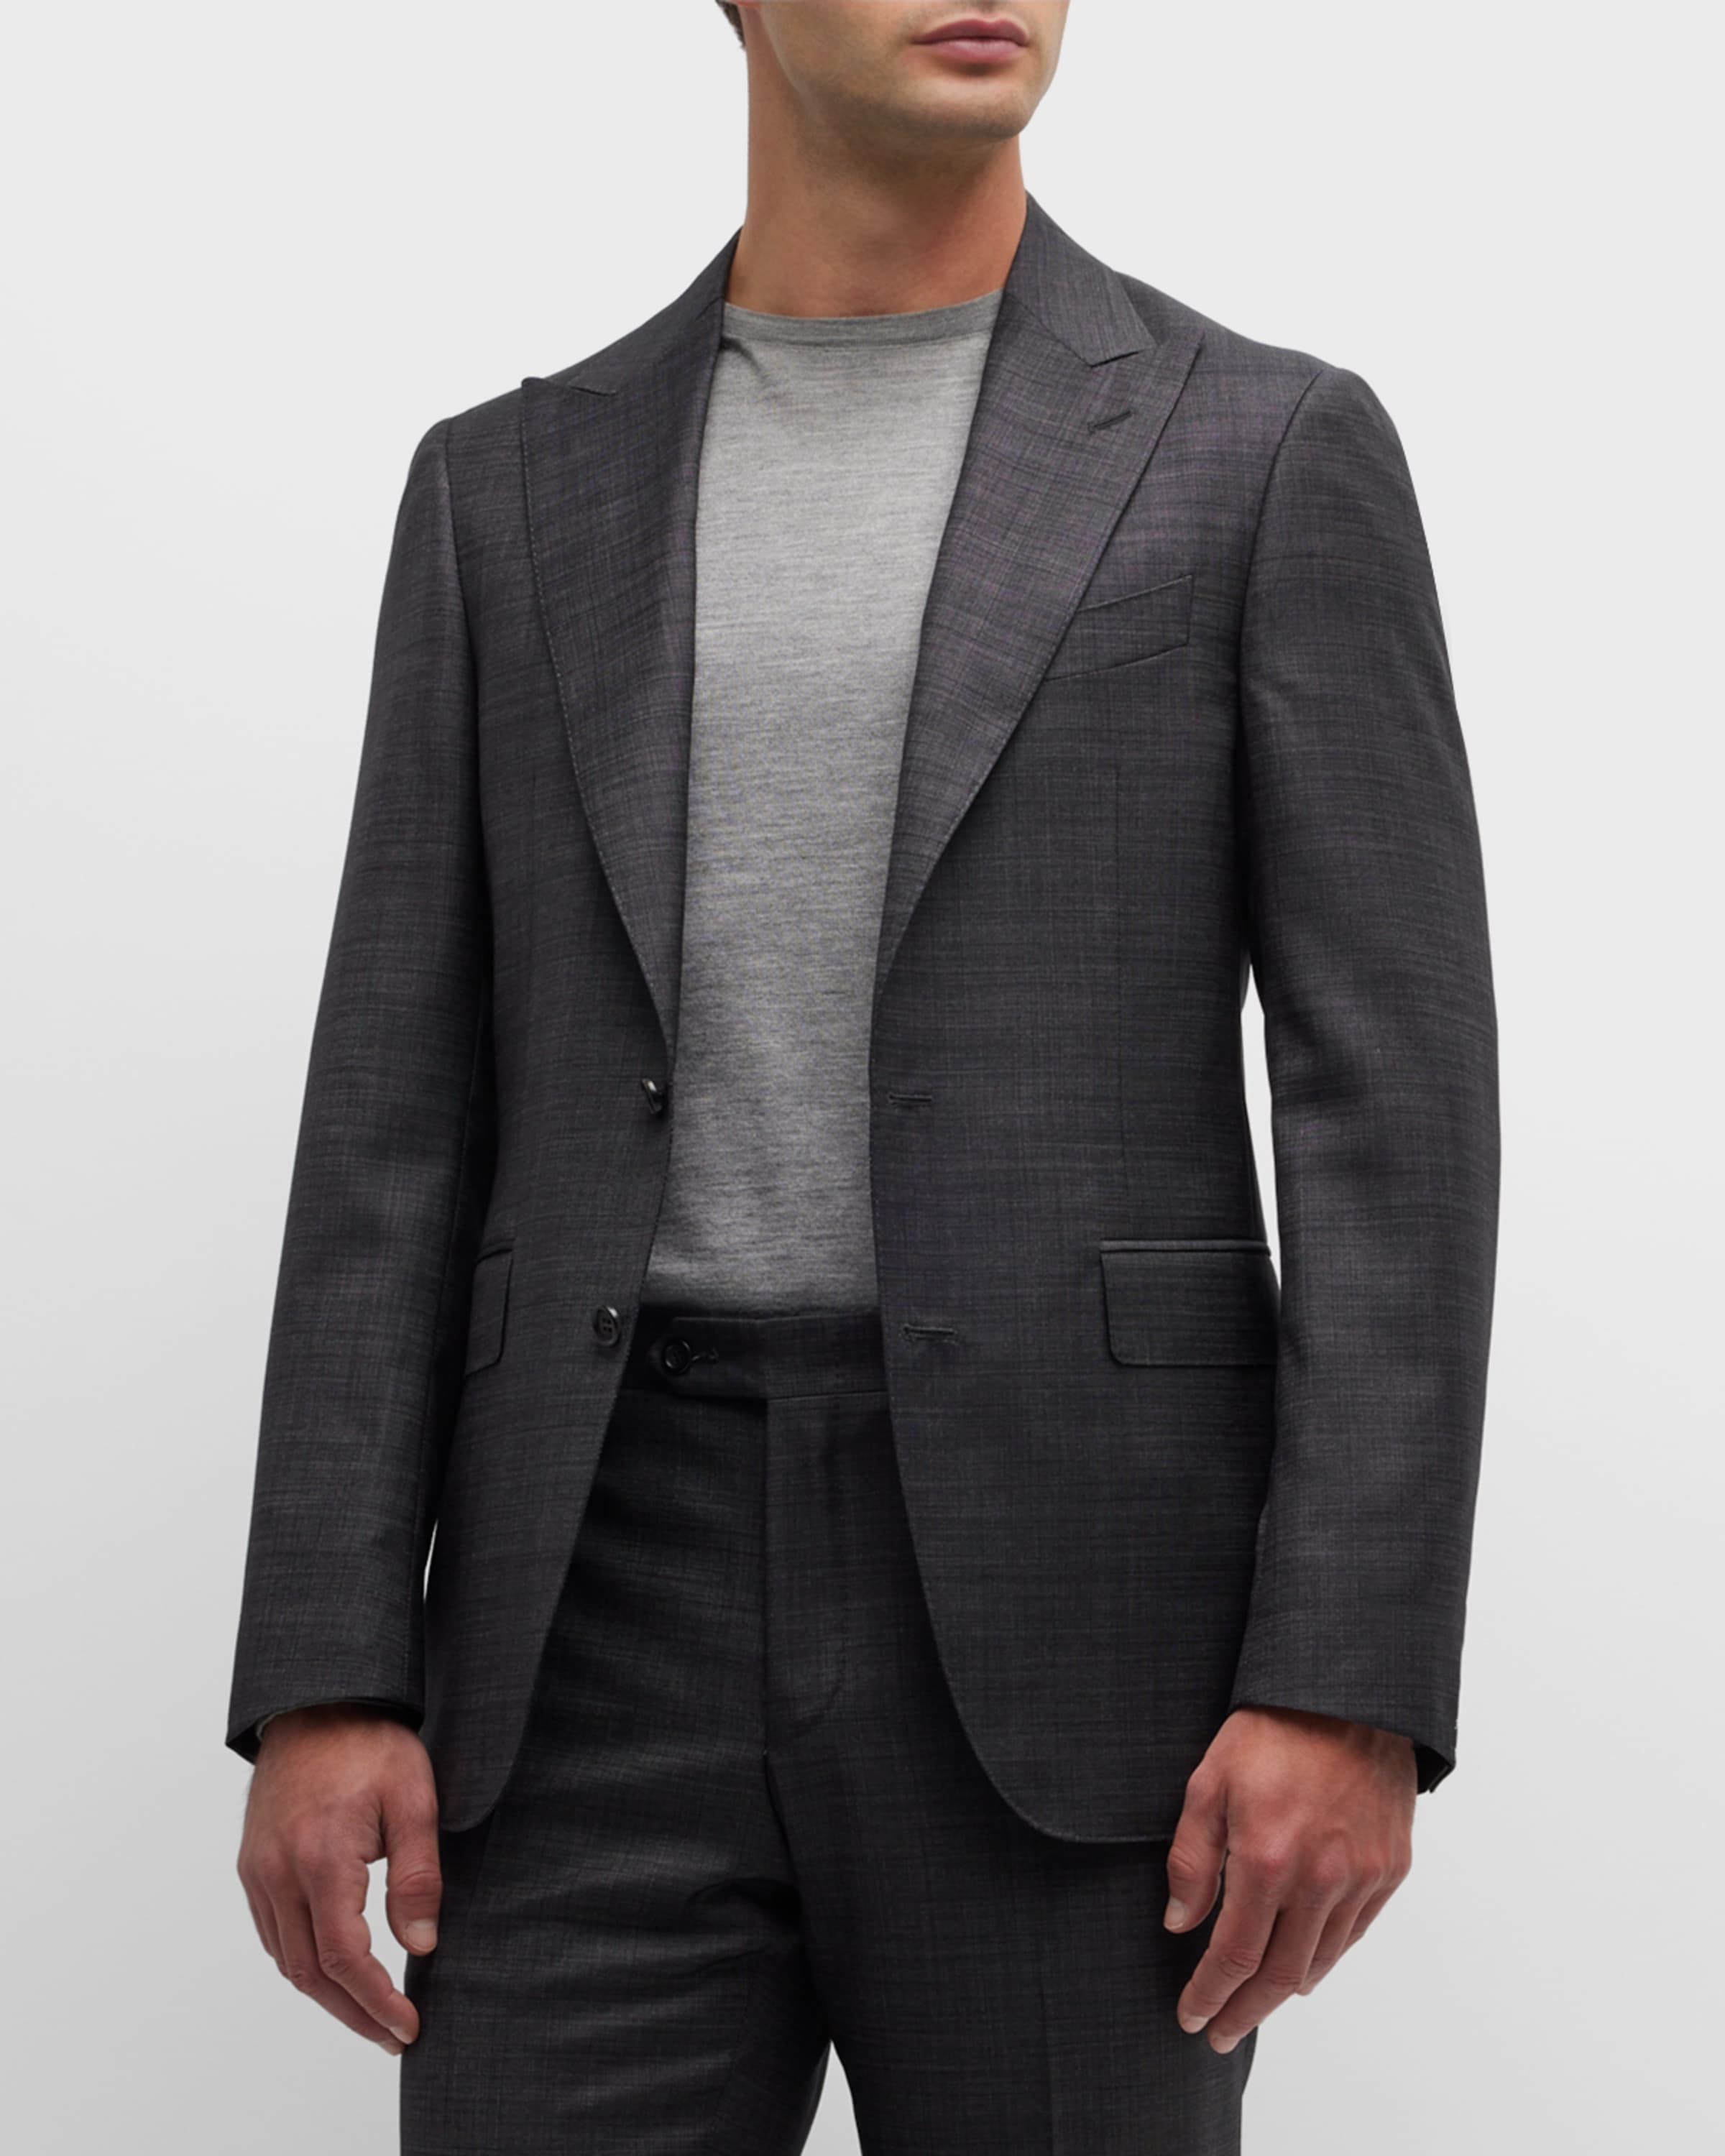 Men's Solid Wool Tic Suit - 1